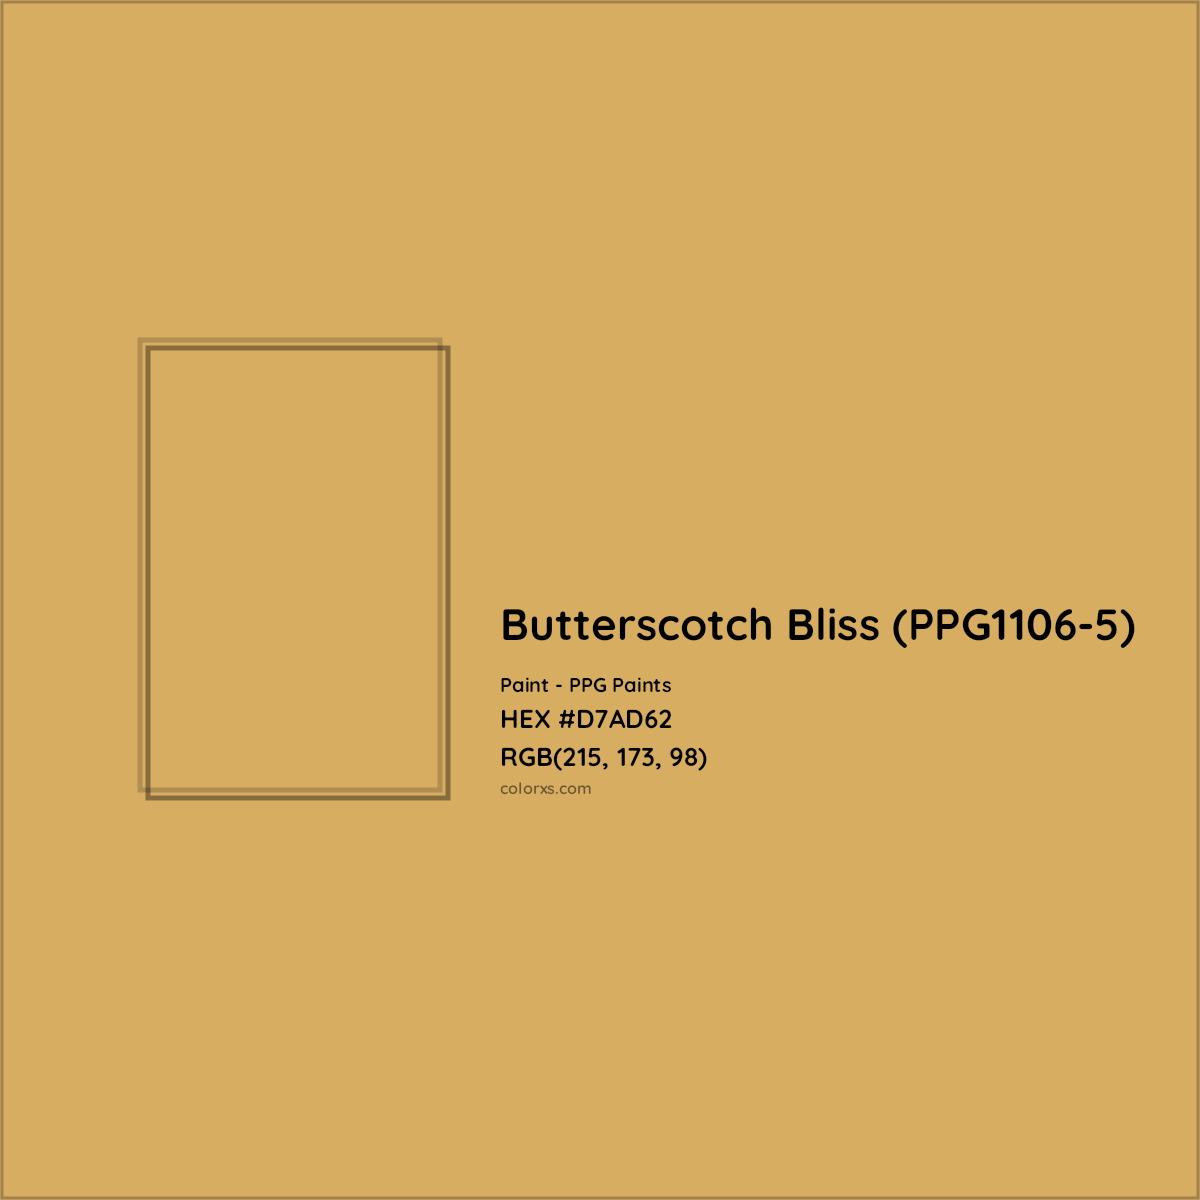 HEX #D7AD62 Butterscotch Bliss (PPG1106-5) Paint PPG Paints - Color Code